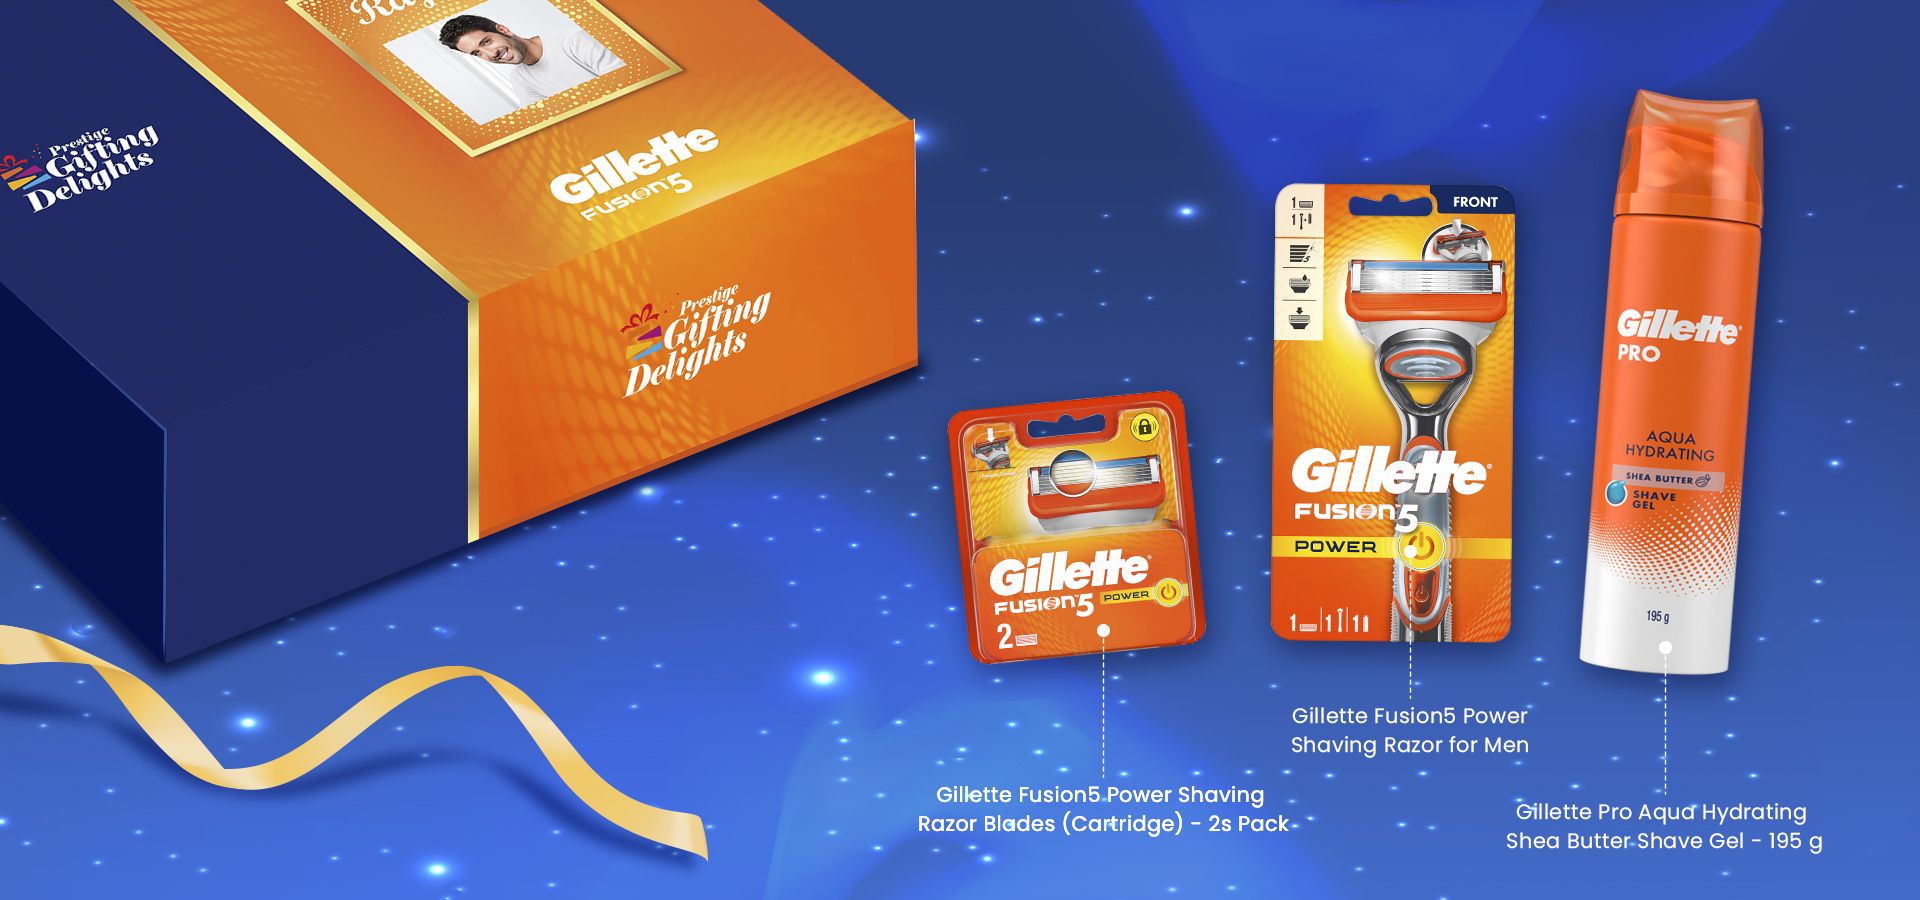 Gillette Fusion Power Razor Shaving Corporate Gift Pack for Men